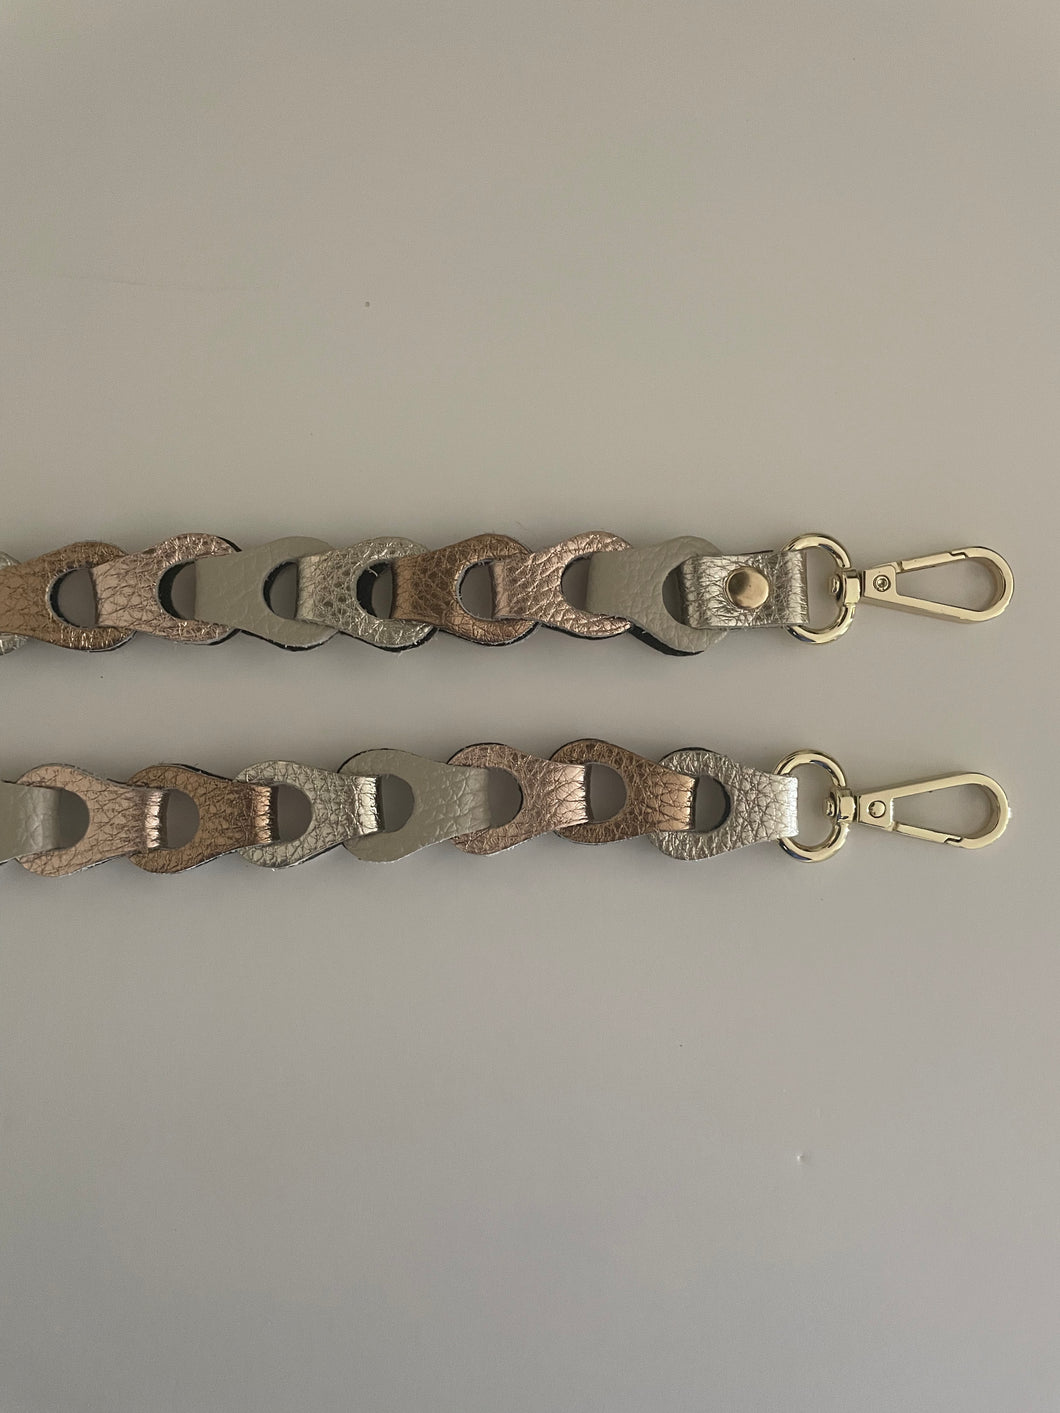 Lederen Bagstrap Small, schouderband voor aan een tas, ook als telefoonkoord te dragen. De band is ca. 2,5cm breed en is niet verstelbaar. De schouderband is in verschillende kleuren verkrijgbaar: Beige-Zwart-Zilver metallic, Beige-Groen-Zilver metallic, Beige-Rosé metallic-Brons metallic-Zilver metallic.